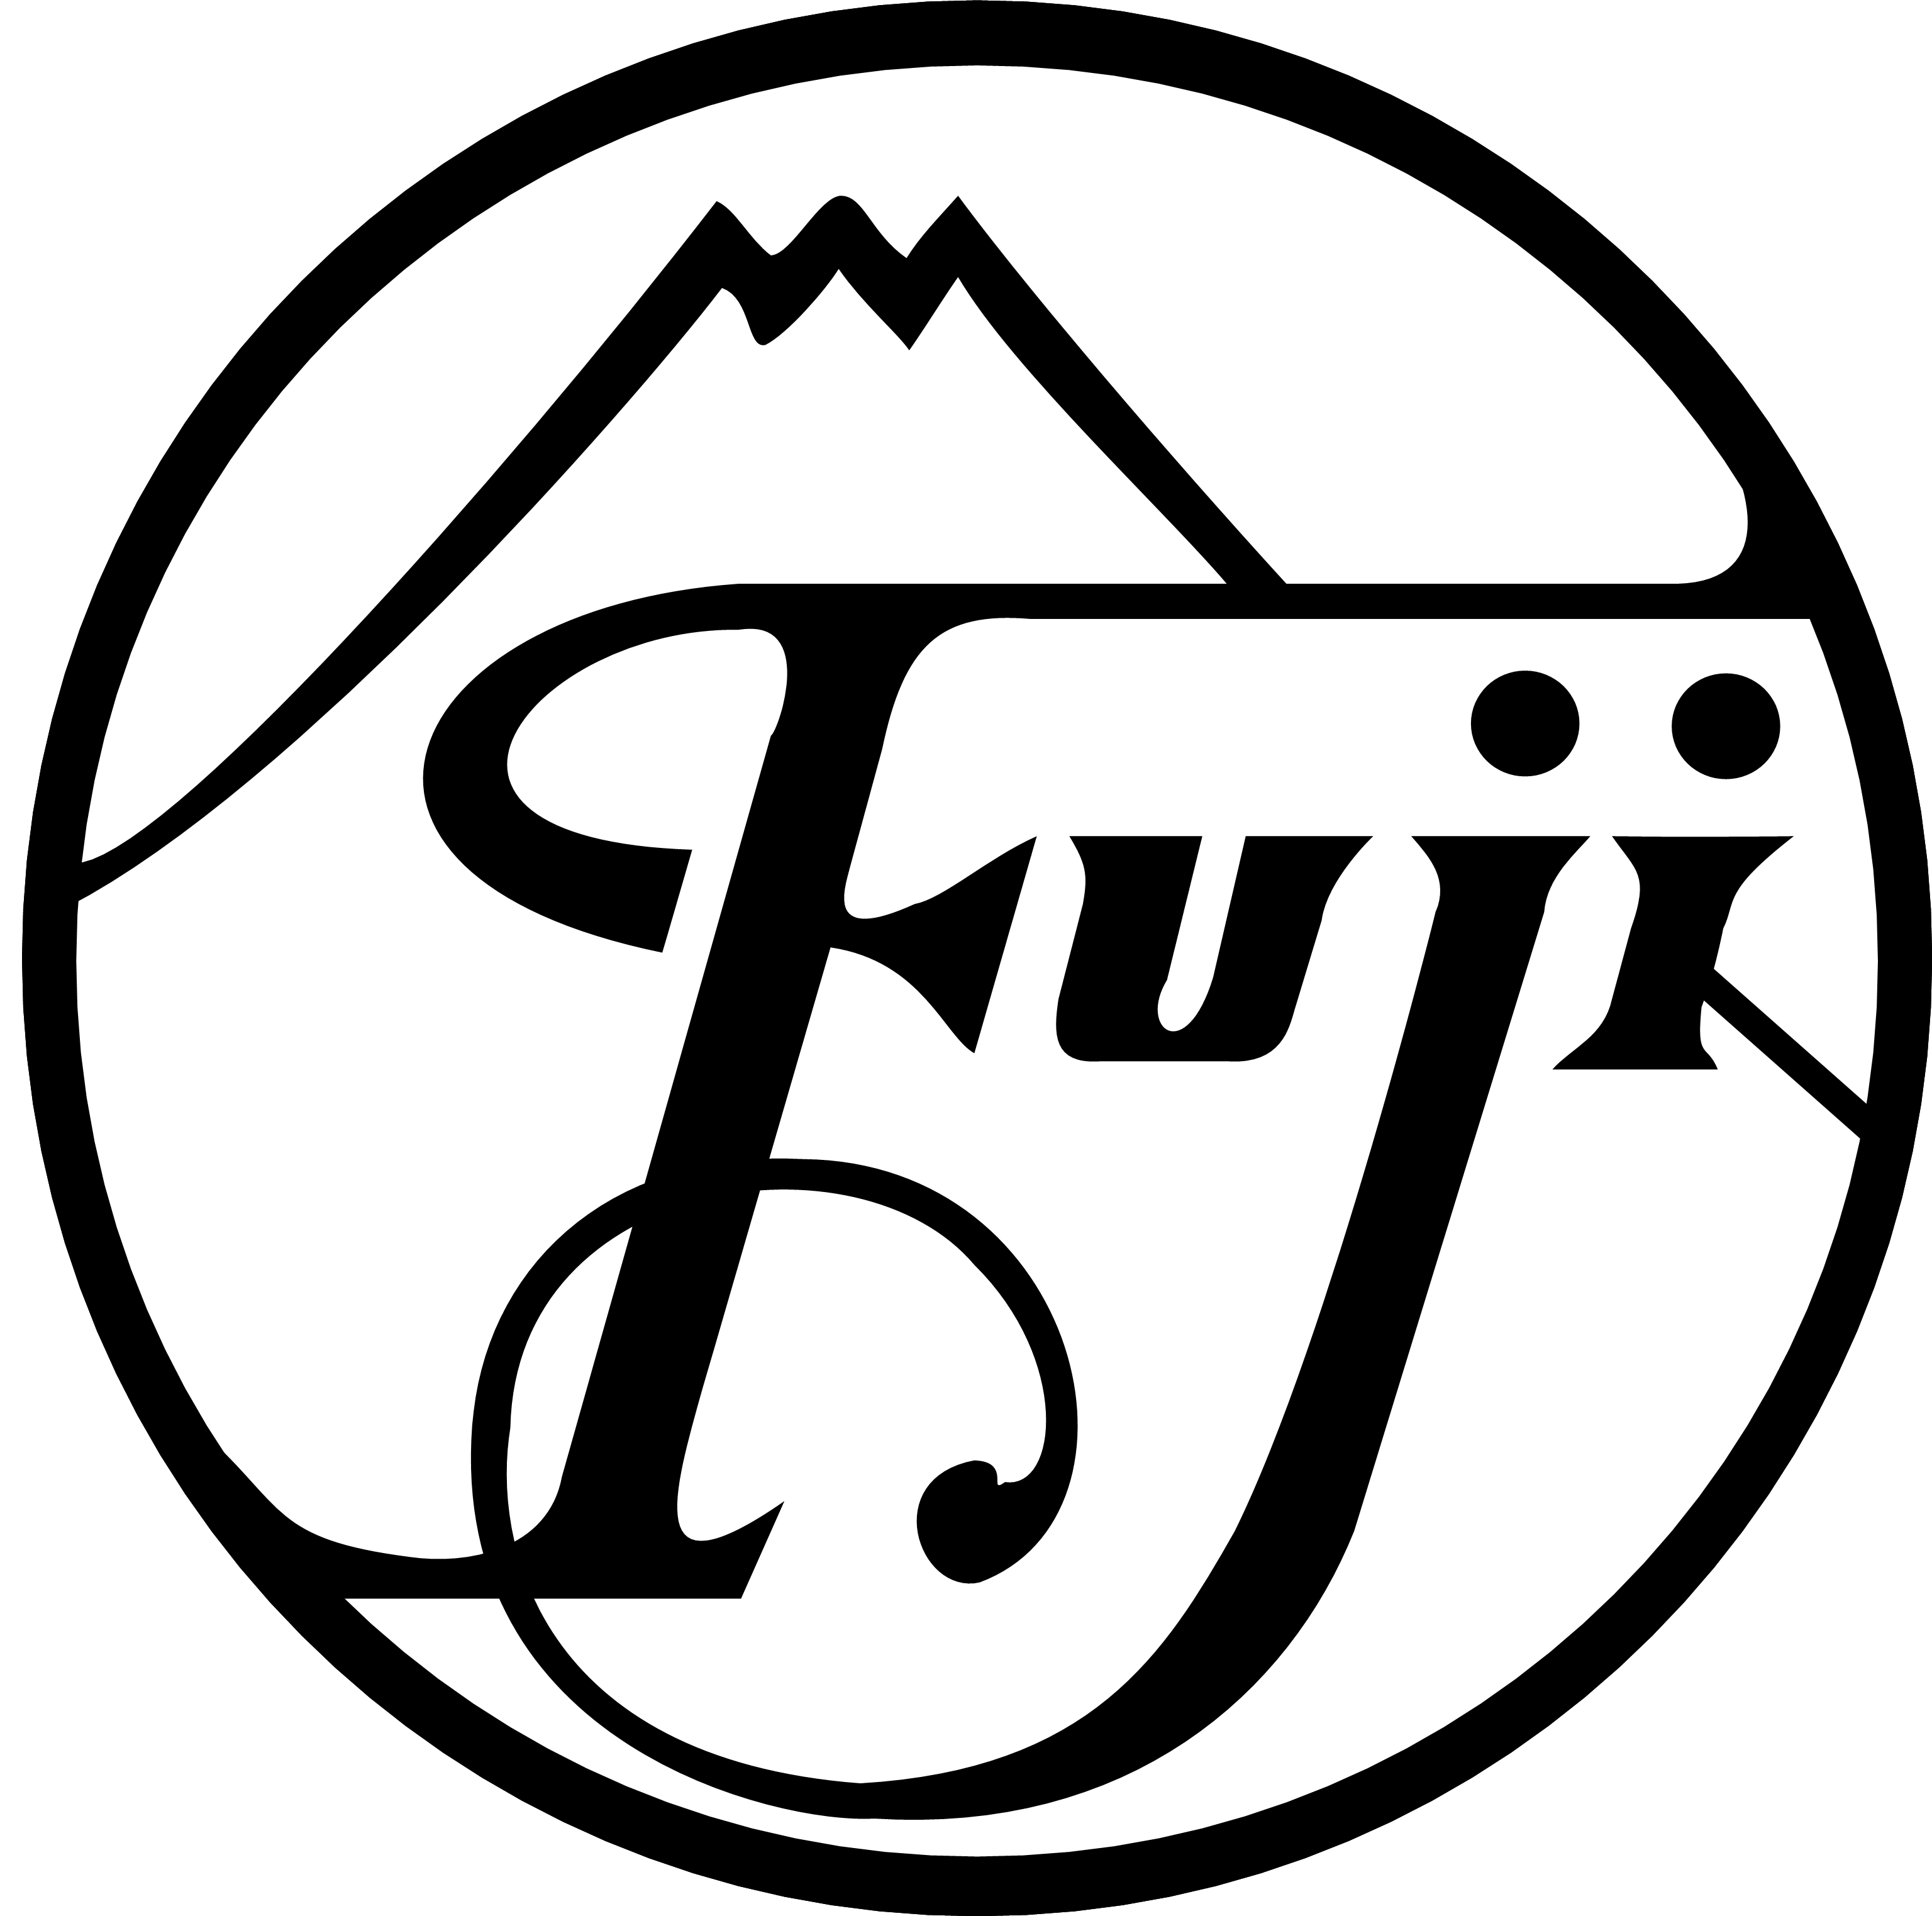 Old Fujifilm Logo - Fujifilm | Logopedia | FANDOM powered by Wikia